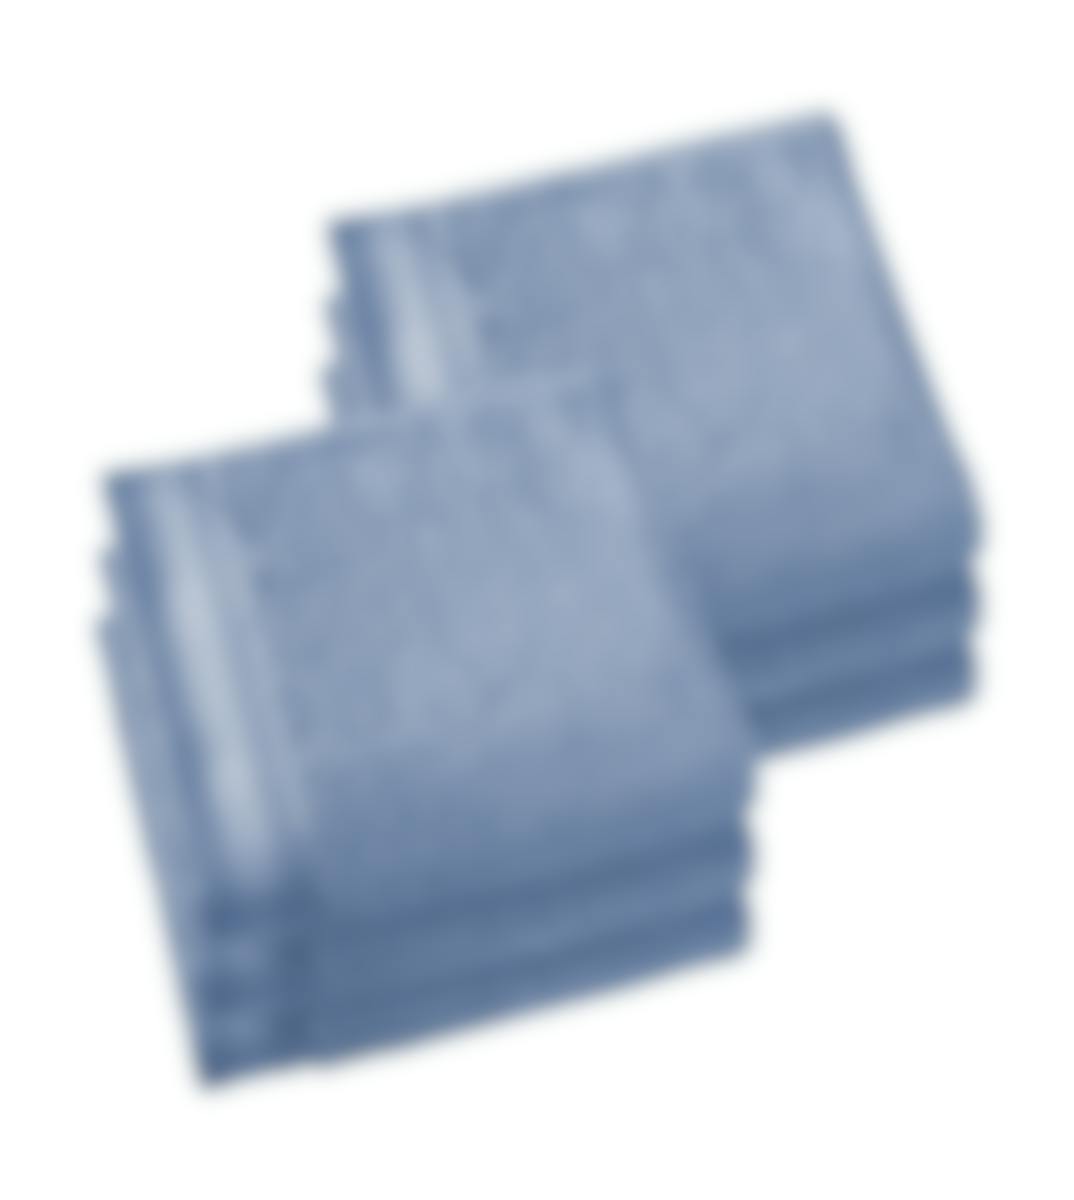 De Witte Lietaer serviette de bain Contessa stone blue 50 x 100 cm set de 6
